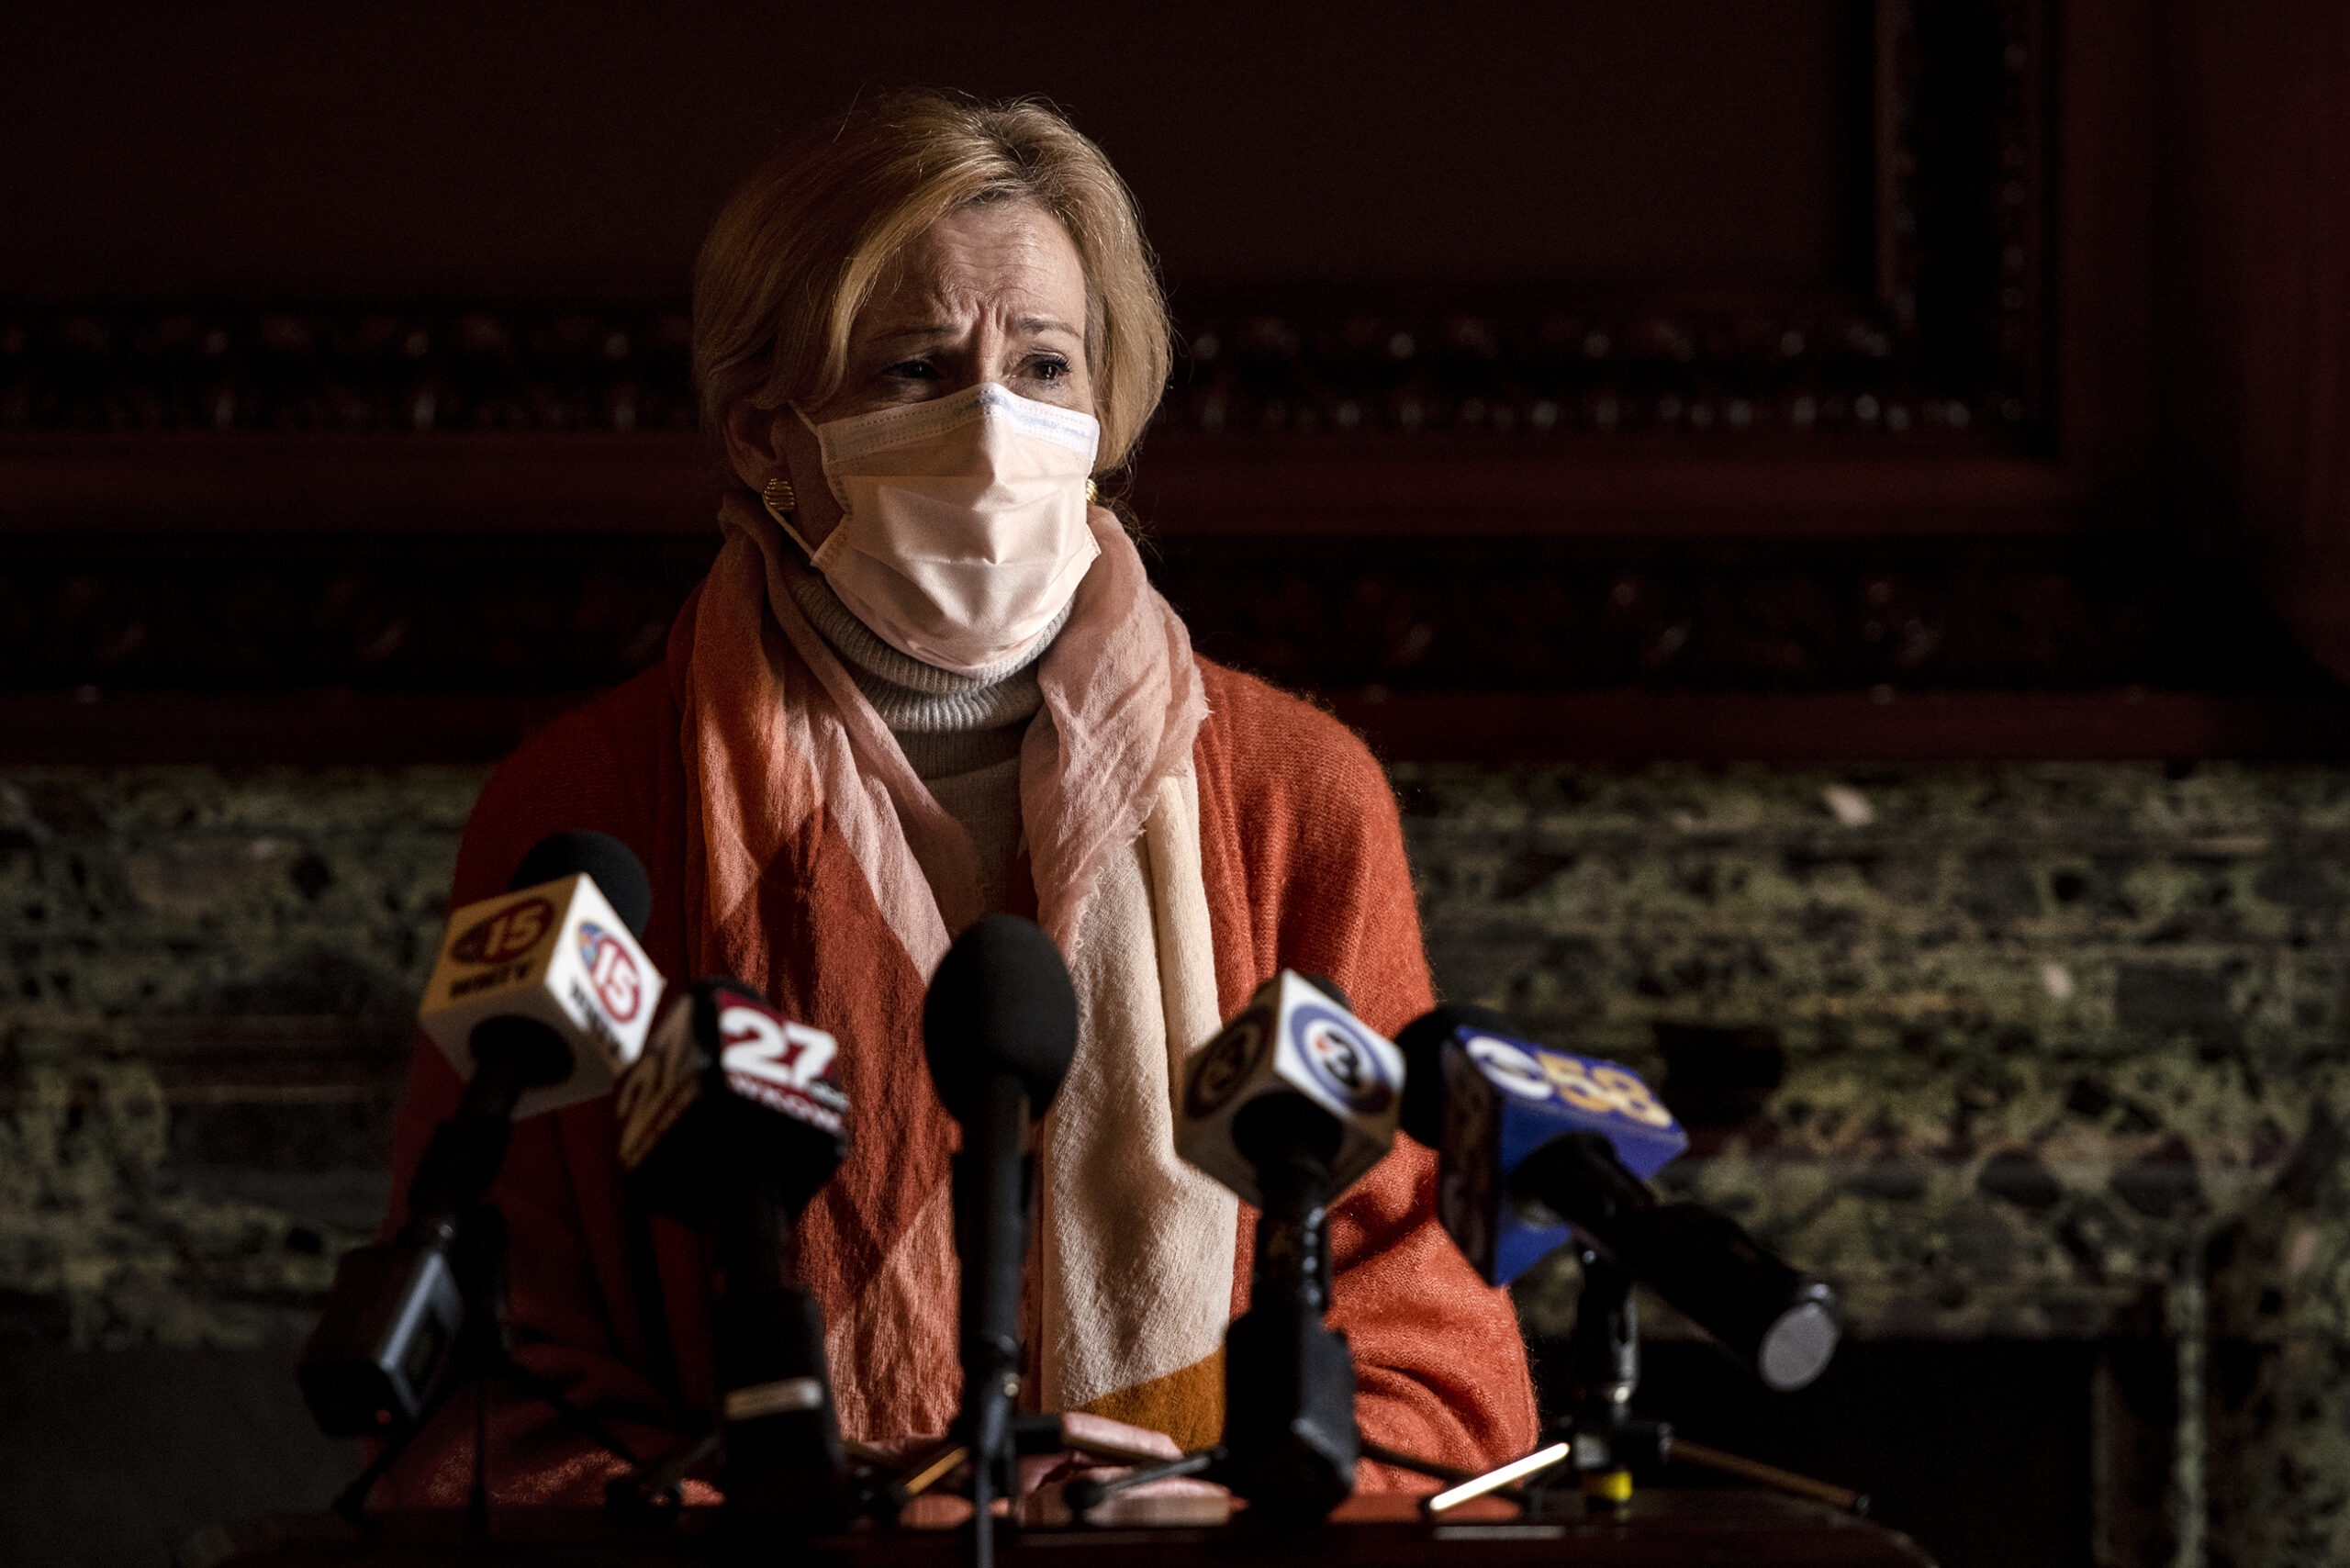 Dr. Deborah Birx wears a mask as she speaks at a lectern